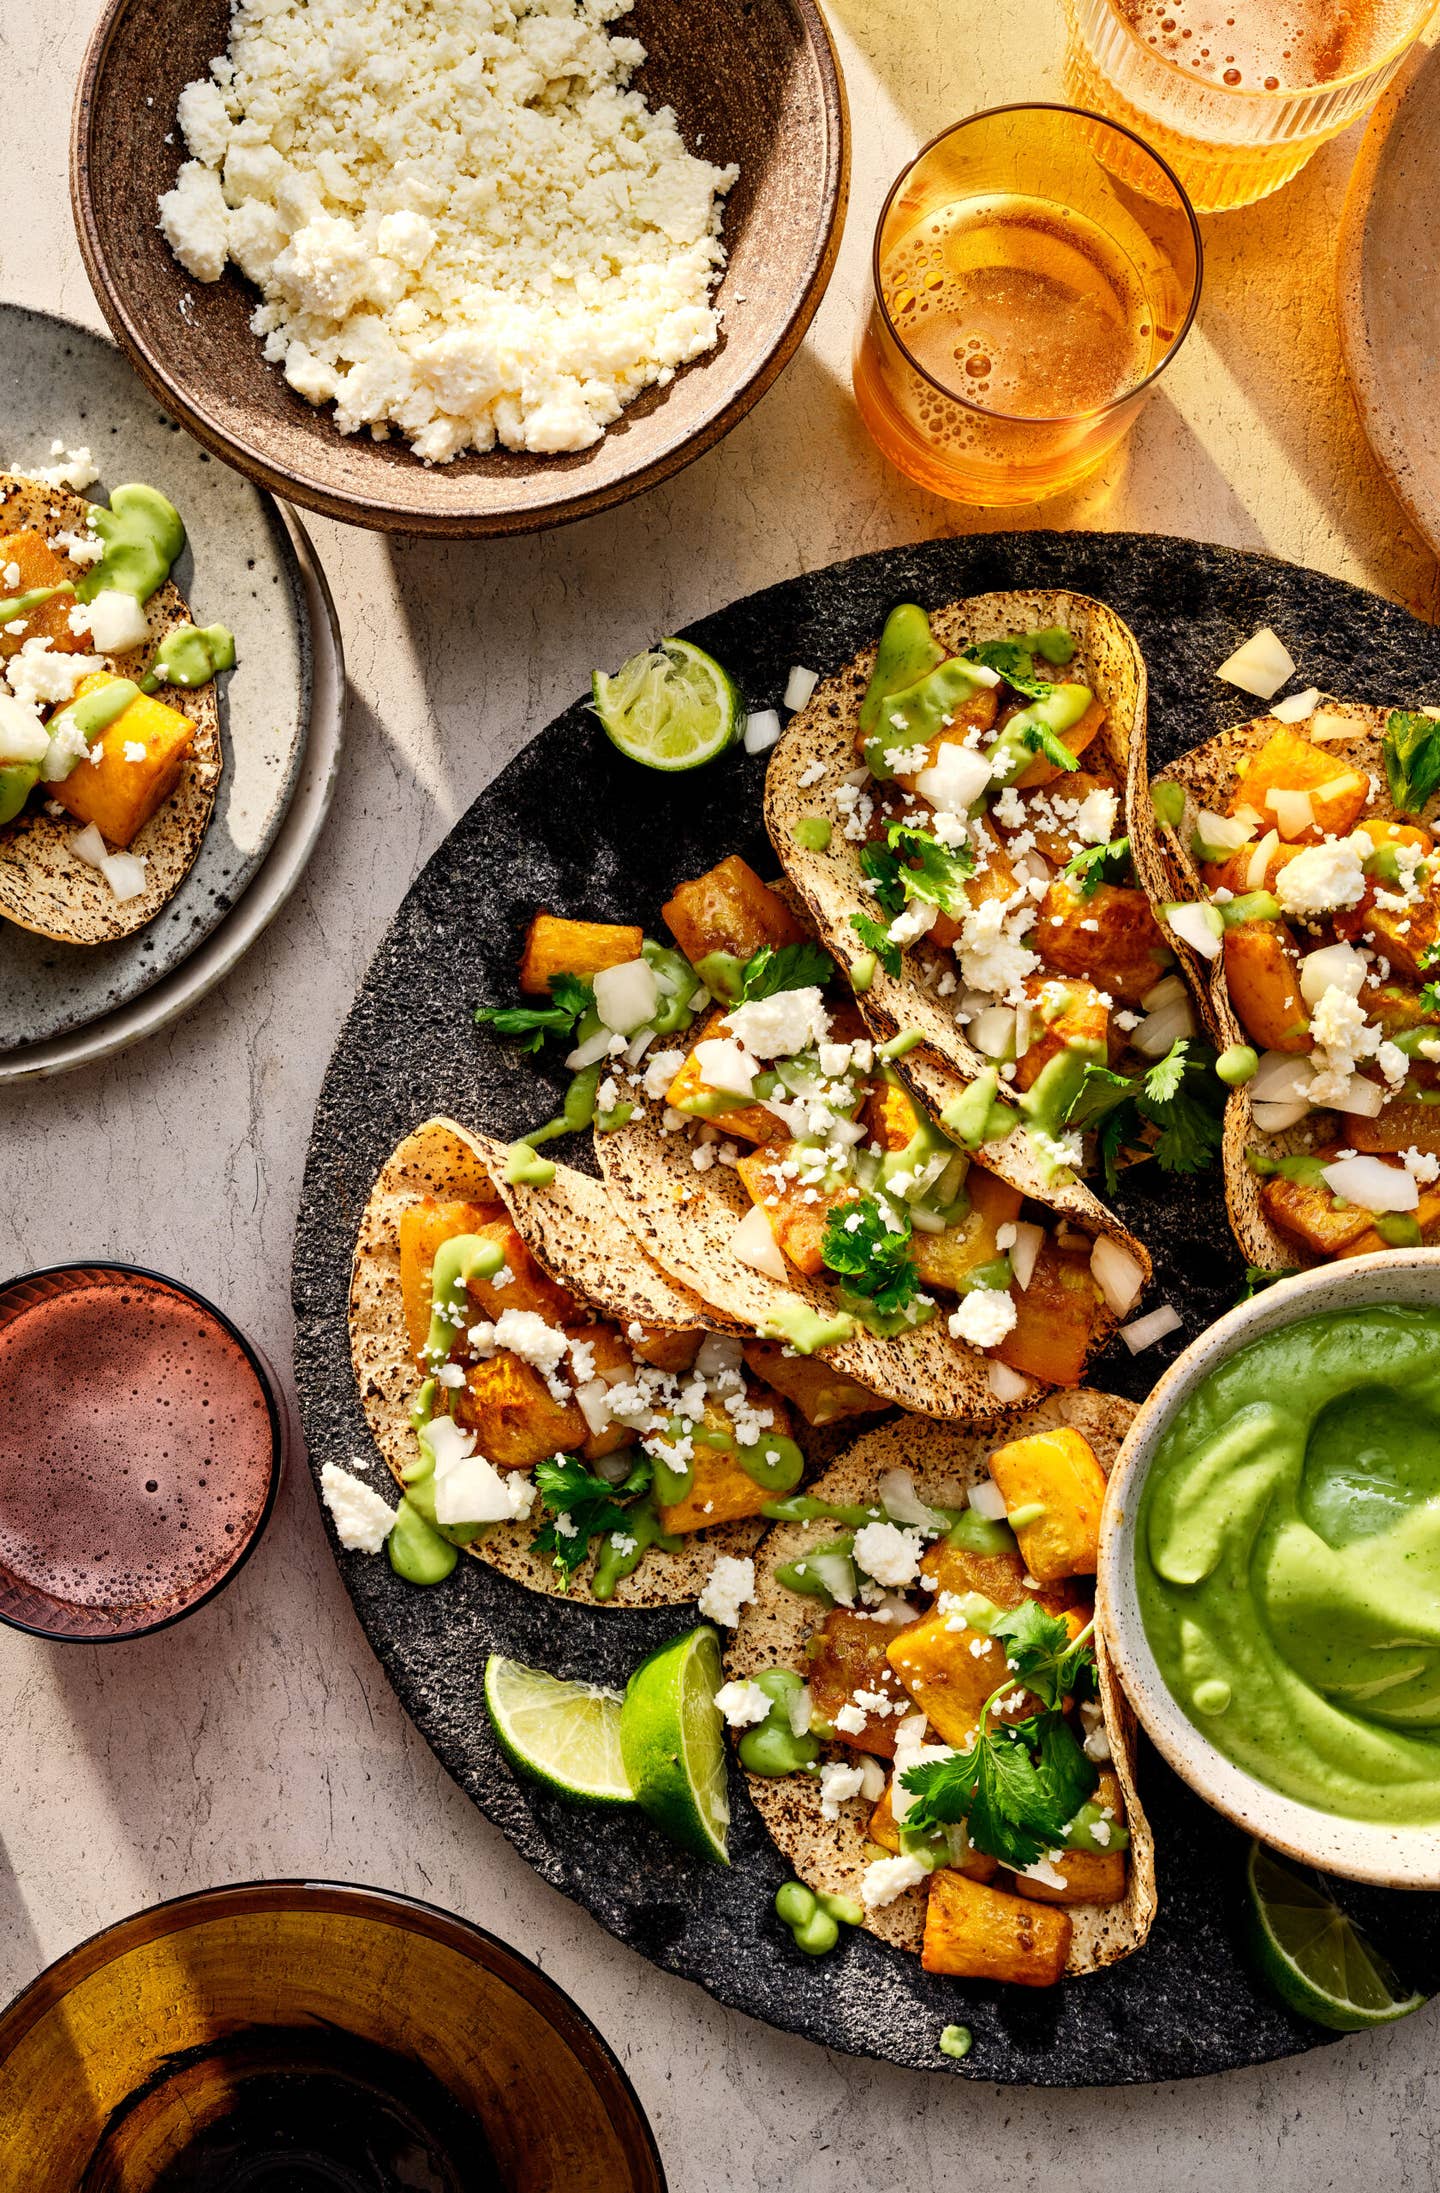 Summer Squash Tacos with Queso Fresco and Avocado Salsa